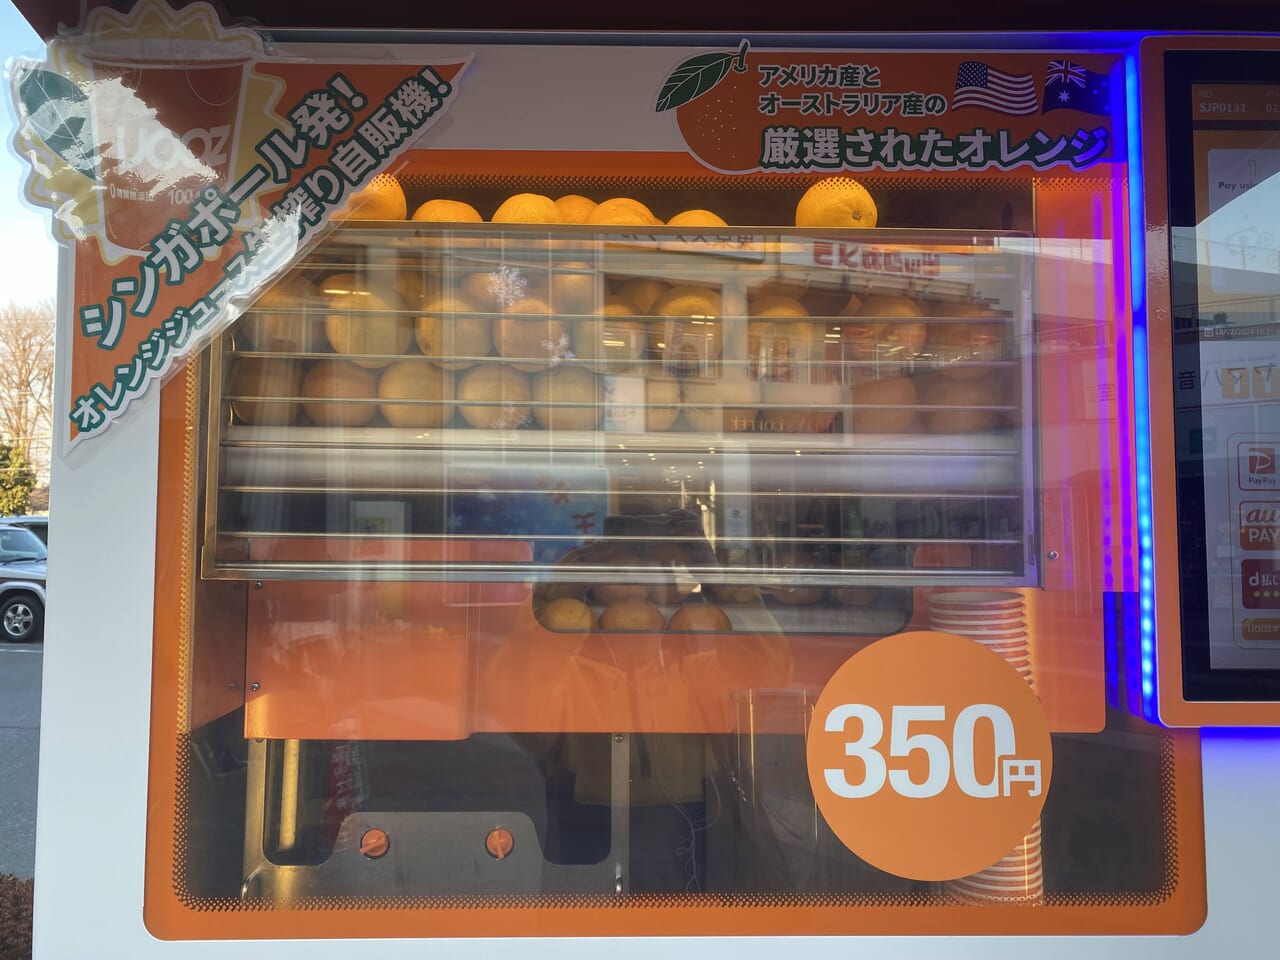 生オレンジジュース自販機